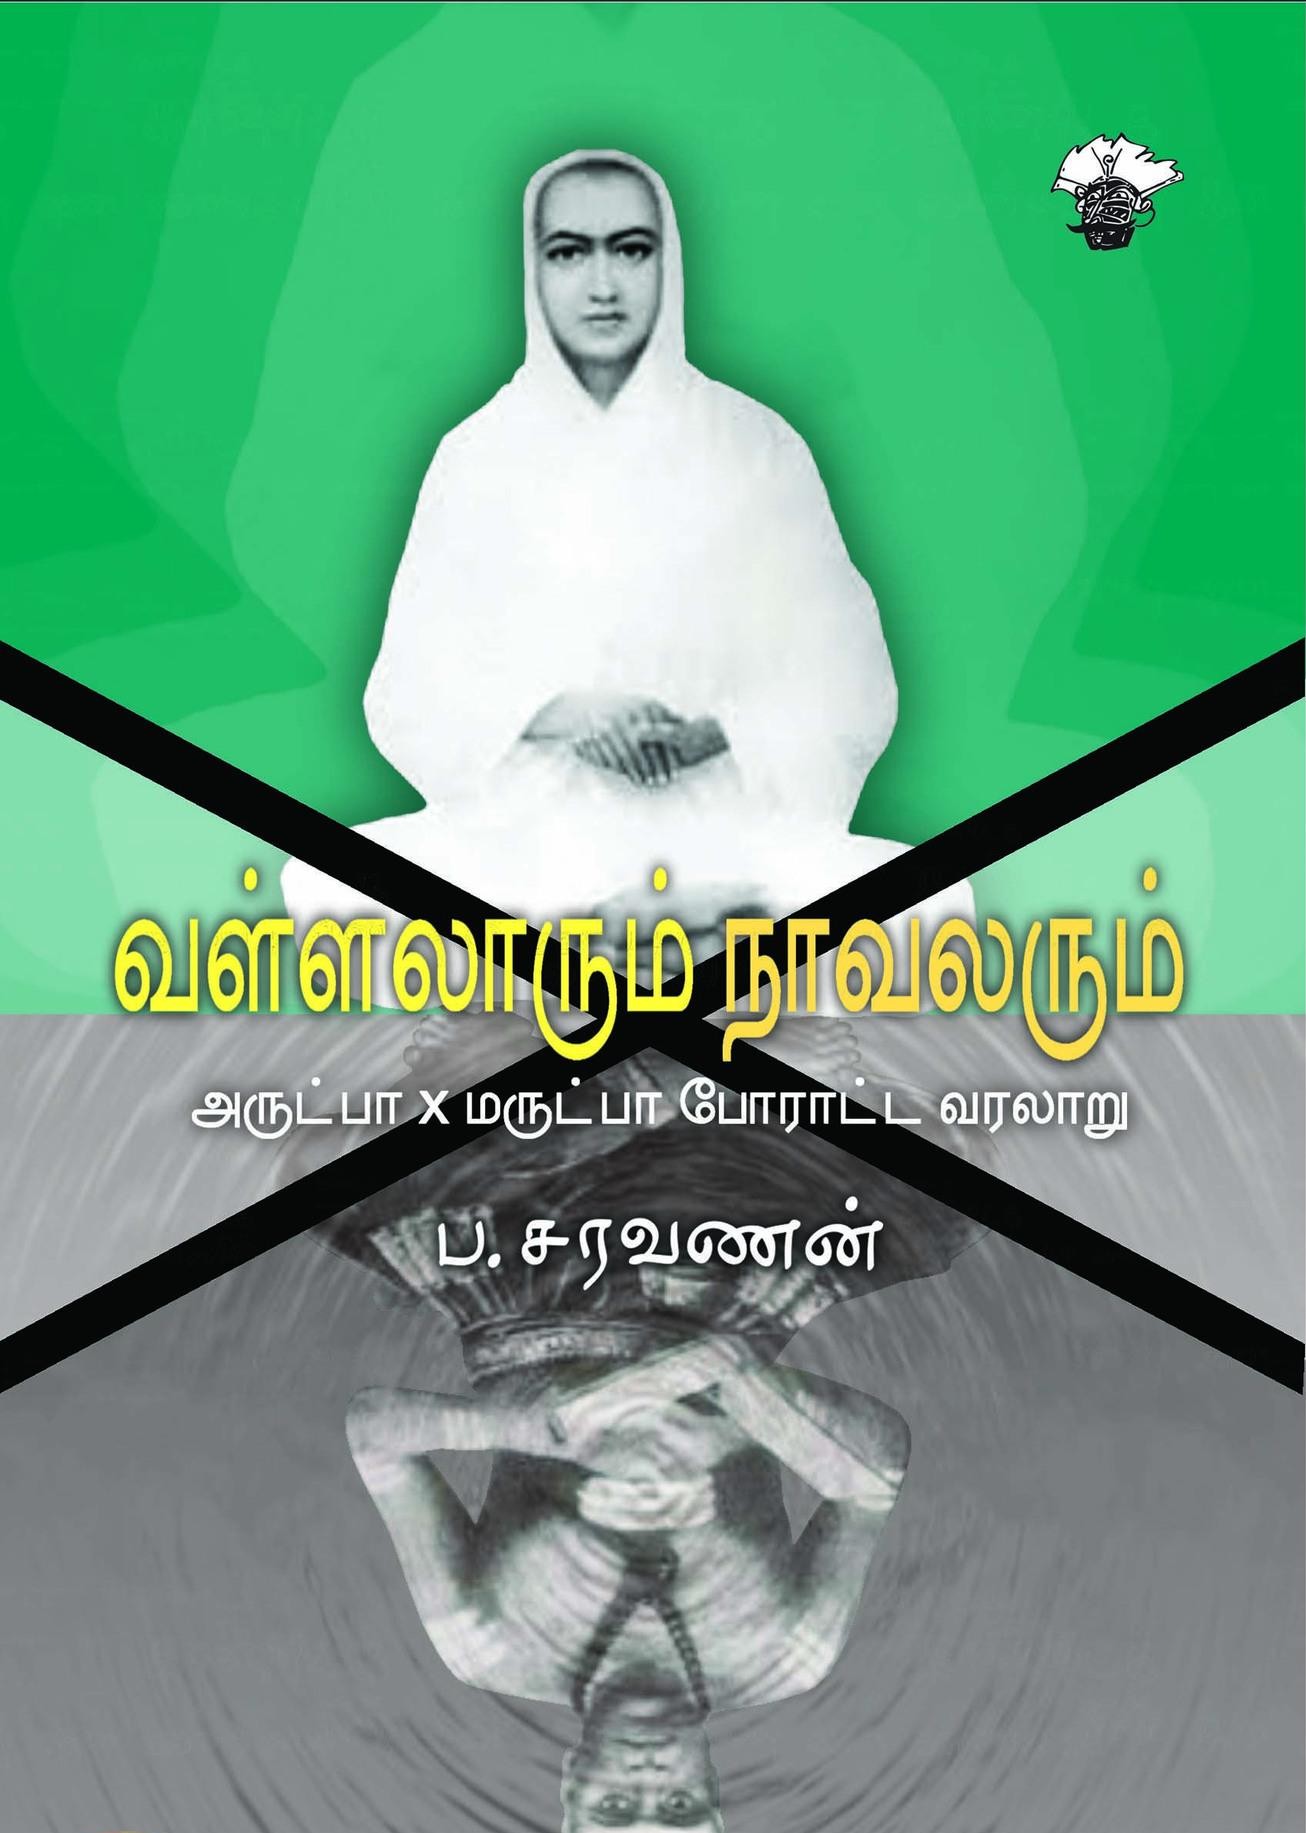 வள்ளலாரும் நாவலரும்: அருட்பா X மருட்பா போராட்ட வரலாறுbook